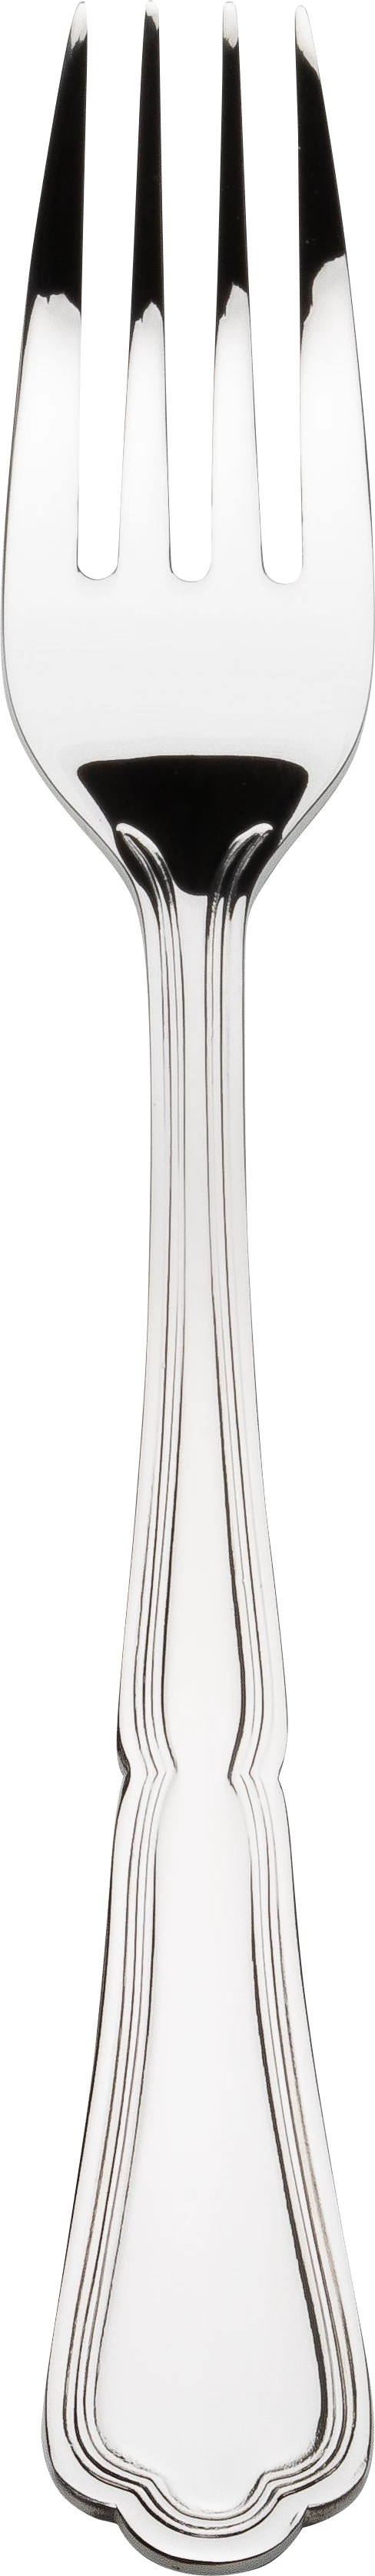 Chippendale Classic spisegaffel, 19,5 cm